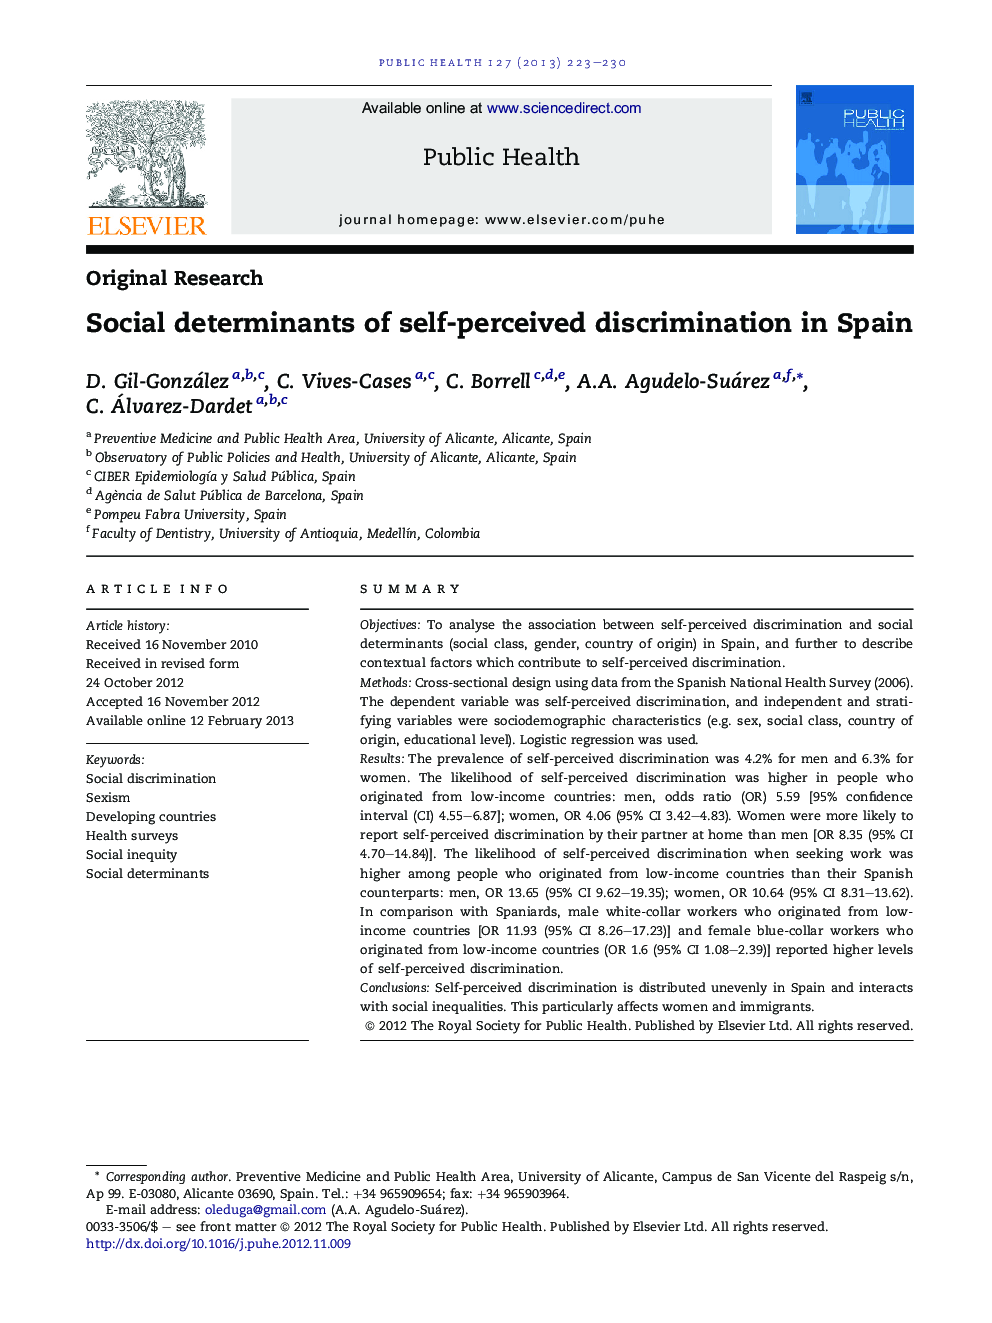 تعیین کننده های اجتماعی تبعیض آمیز در اسپانیا 